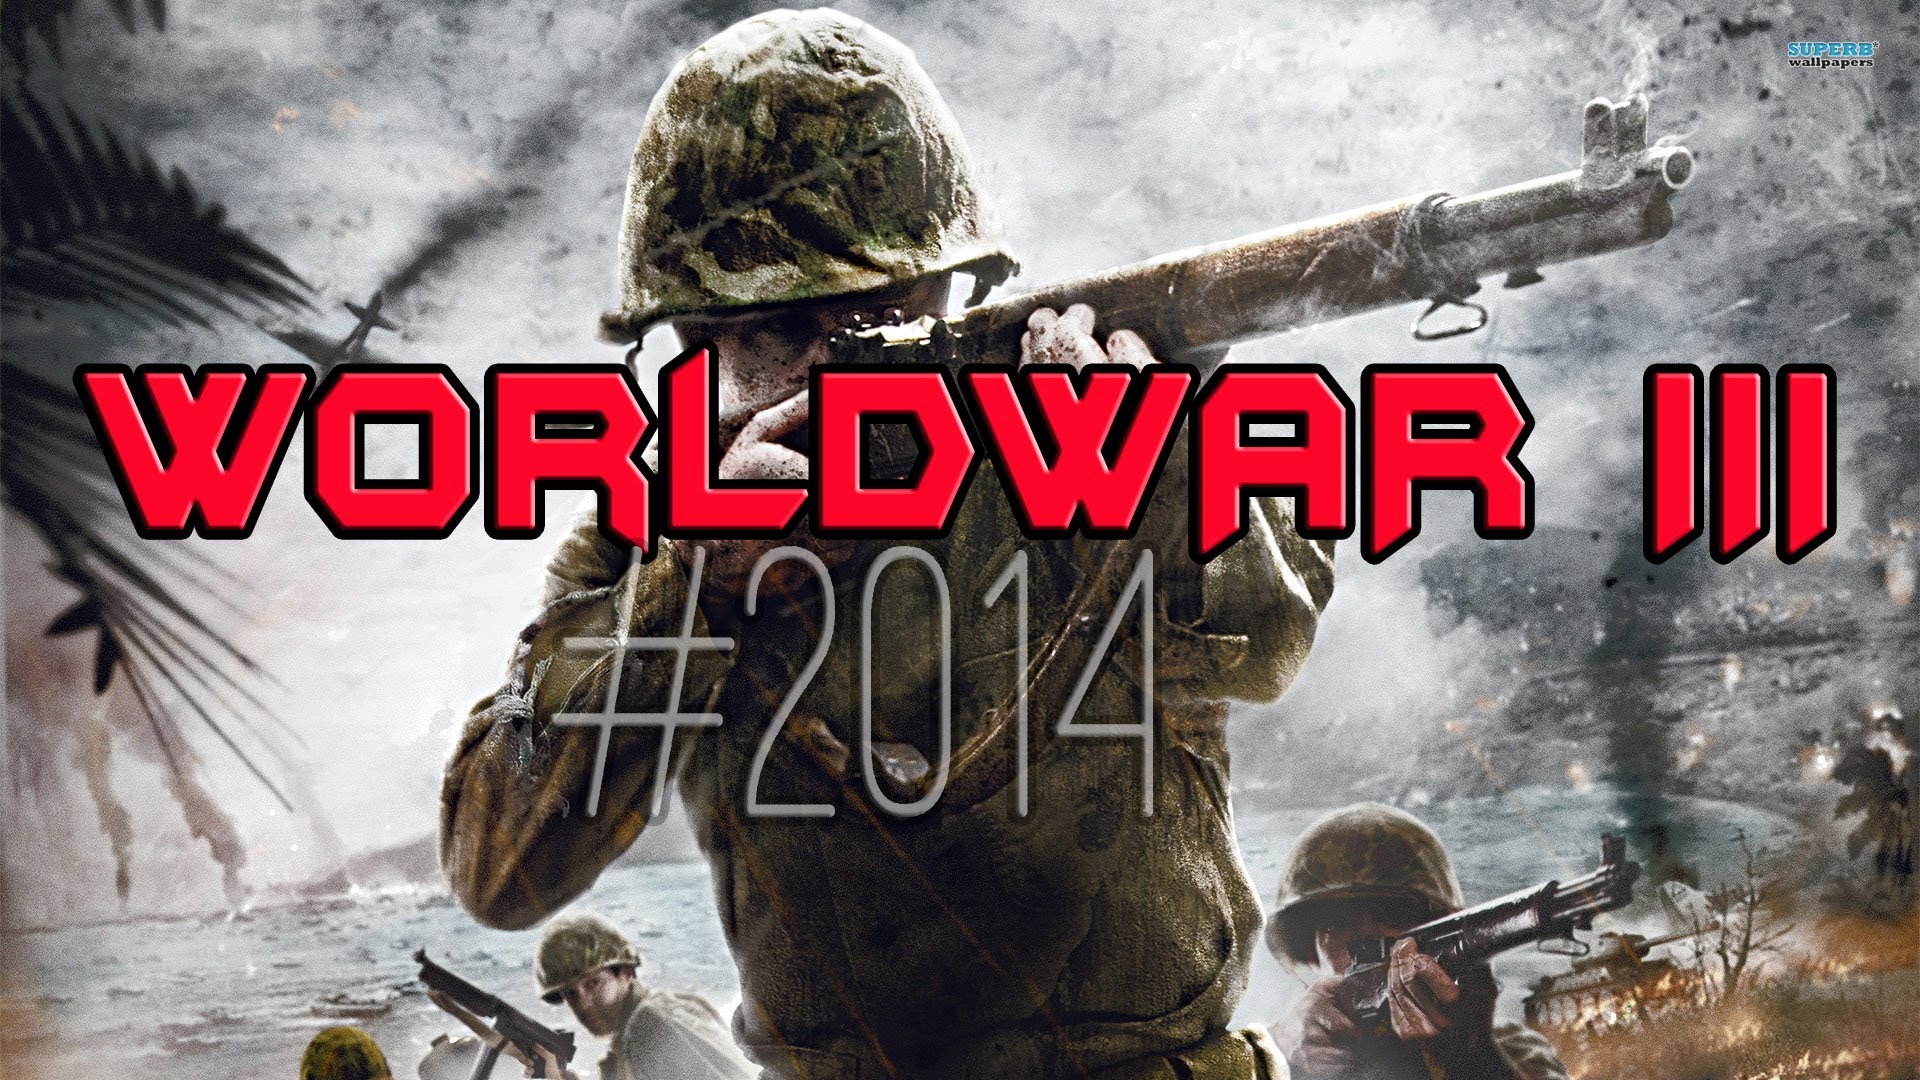 Worldwar 3 Official Trailer HD /2014